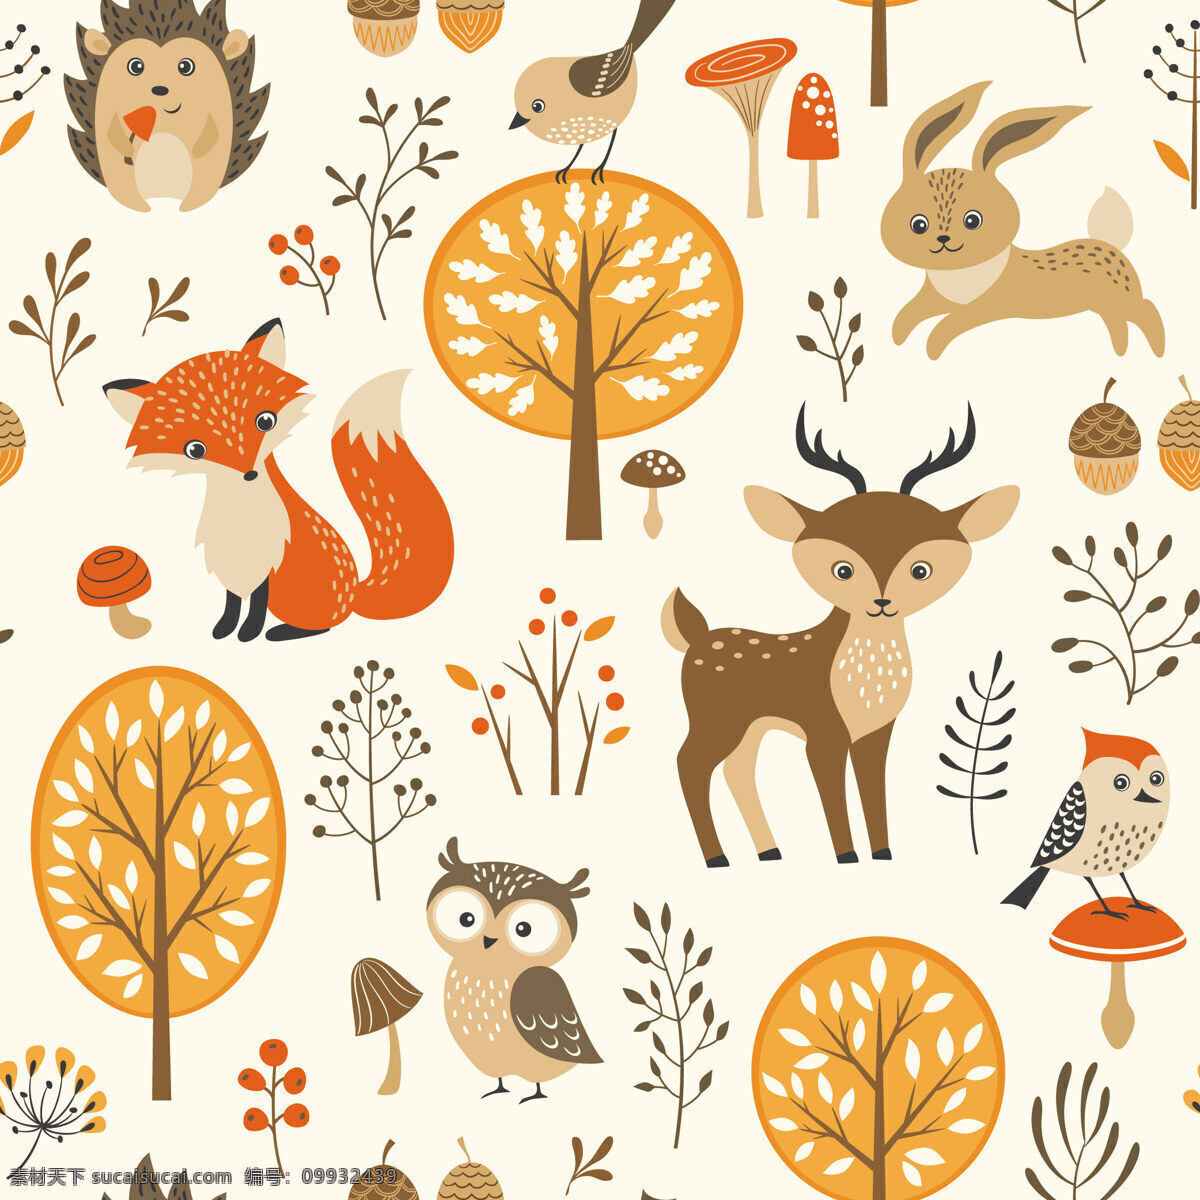 可爱 清新 动植物 壁纸 图案 装饰设计 灰色细树叶 小鹿 小狐狸 小蘑菇 猫头鹰 壁纸图案